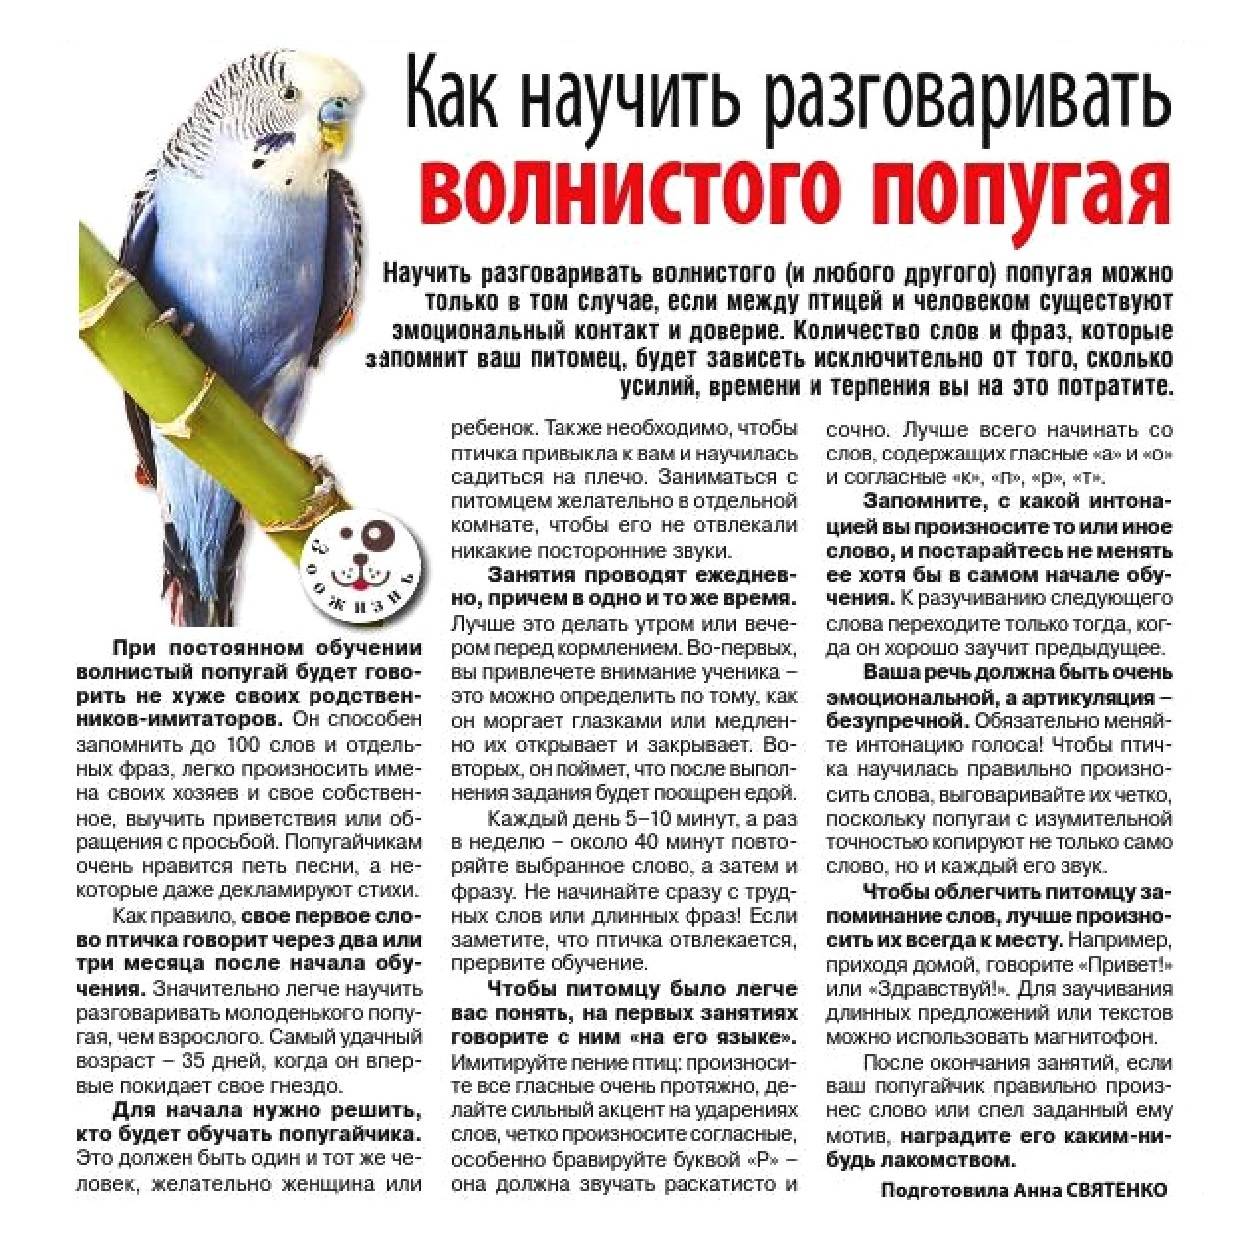 Как научить волнистого попугая говорить? мир хвостатых - журнал о домашних питомцах.